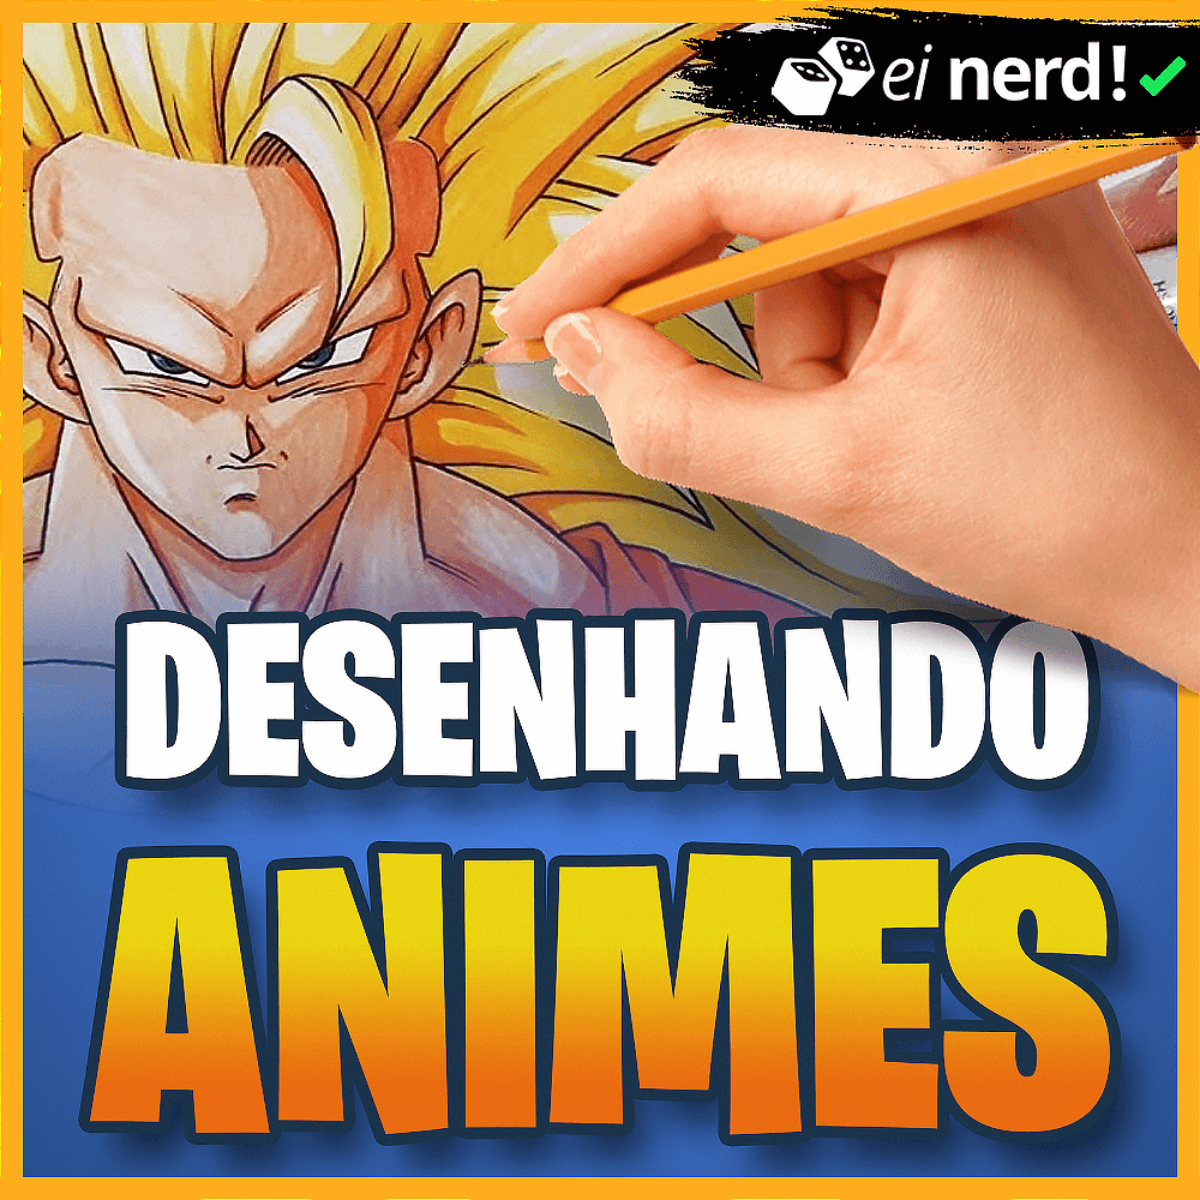 D.Ball Brasil Animes - 👉 Você ou seu Filho(a) curte desenhar? ✍️✍️ Você  percebe que ele(a) passa horas Desenhando e gostaria de Investir no Talento  do seu Filho(a)? Imagina como seria incrível